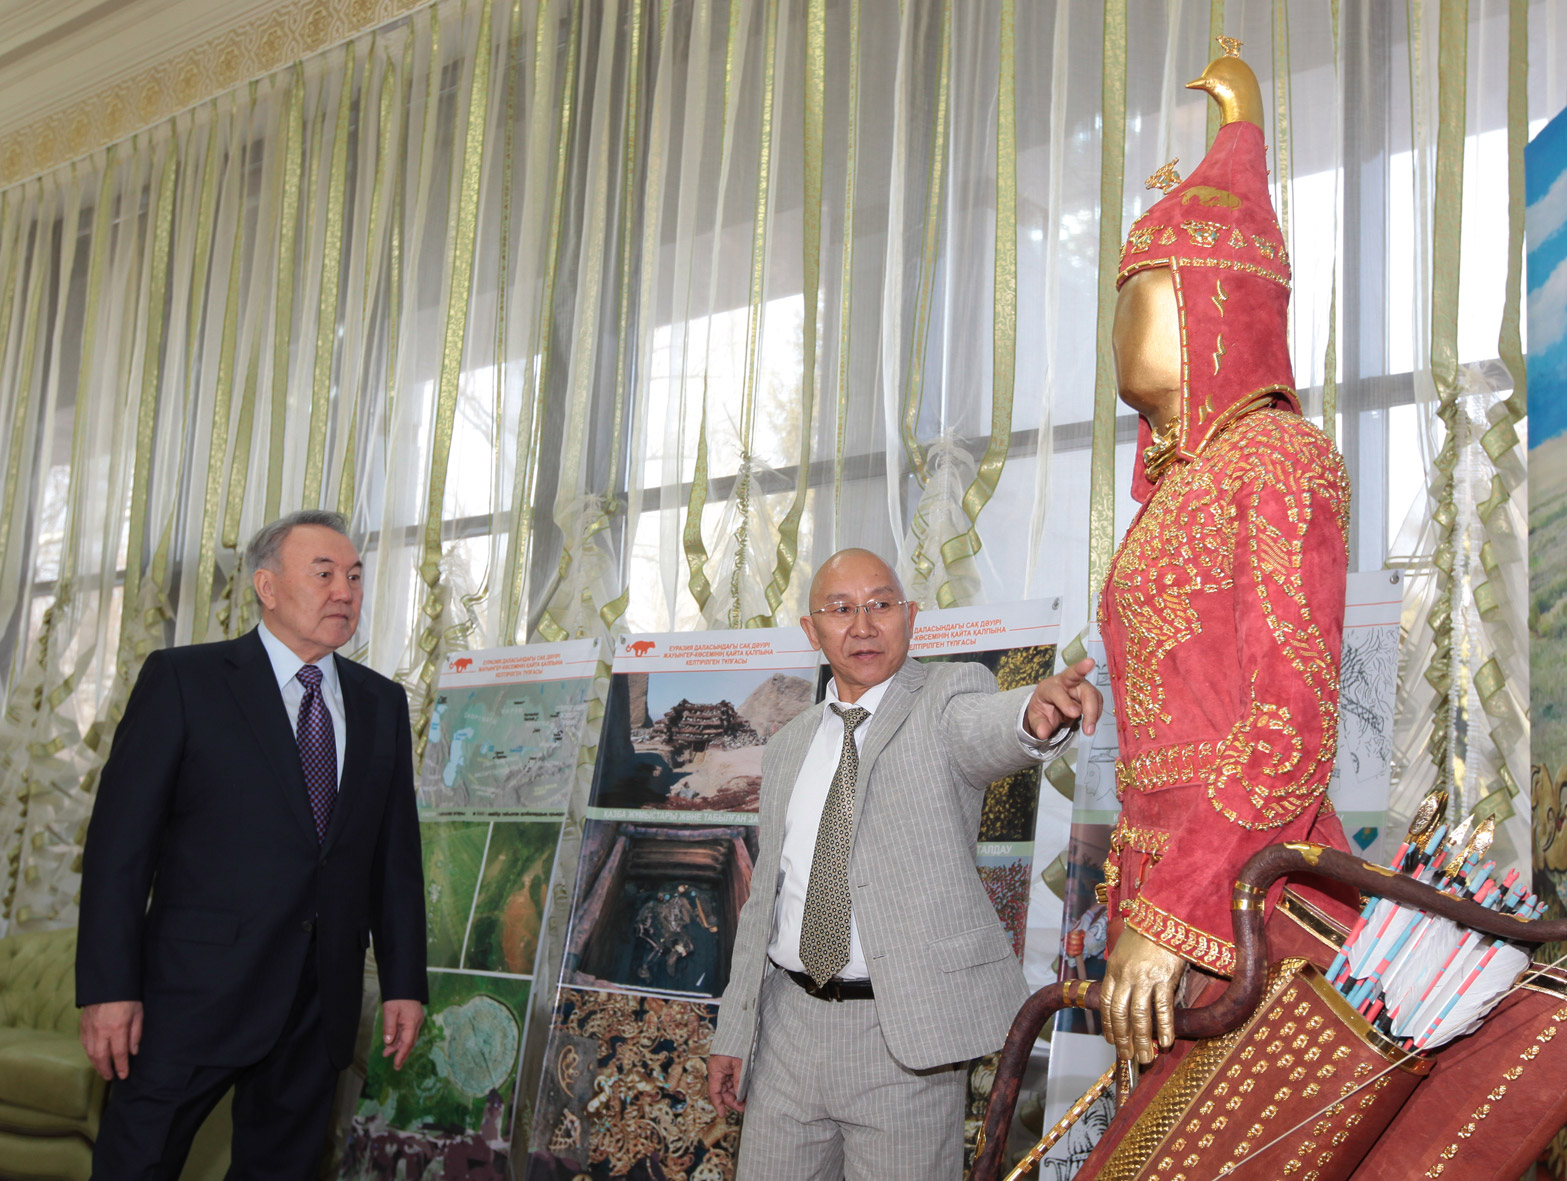 Kyrm Altynbekov shows President Nursultan Nazarbayev his family's reconstruction of the garb of a Saka warrior. Photo courtesy of Krym Altynbekov